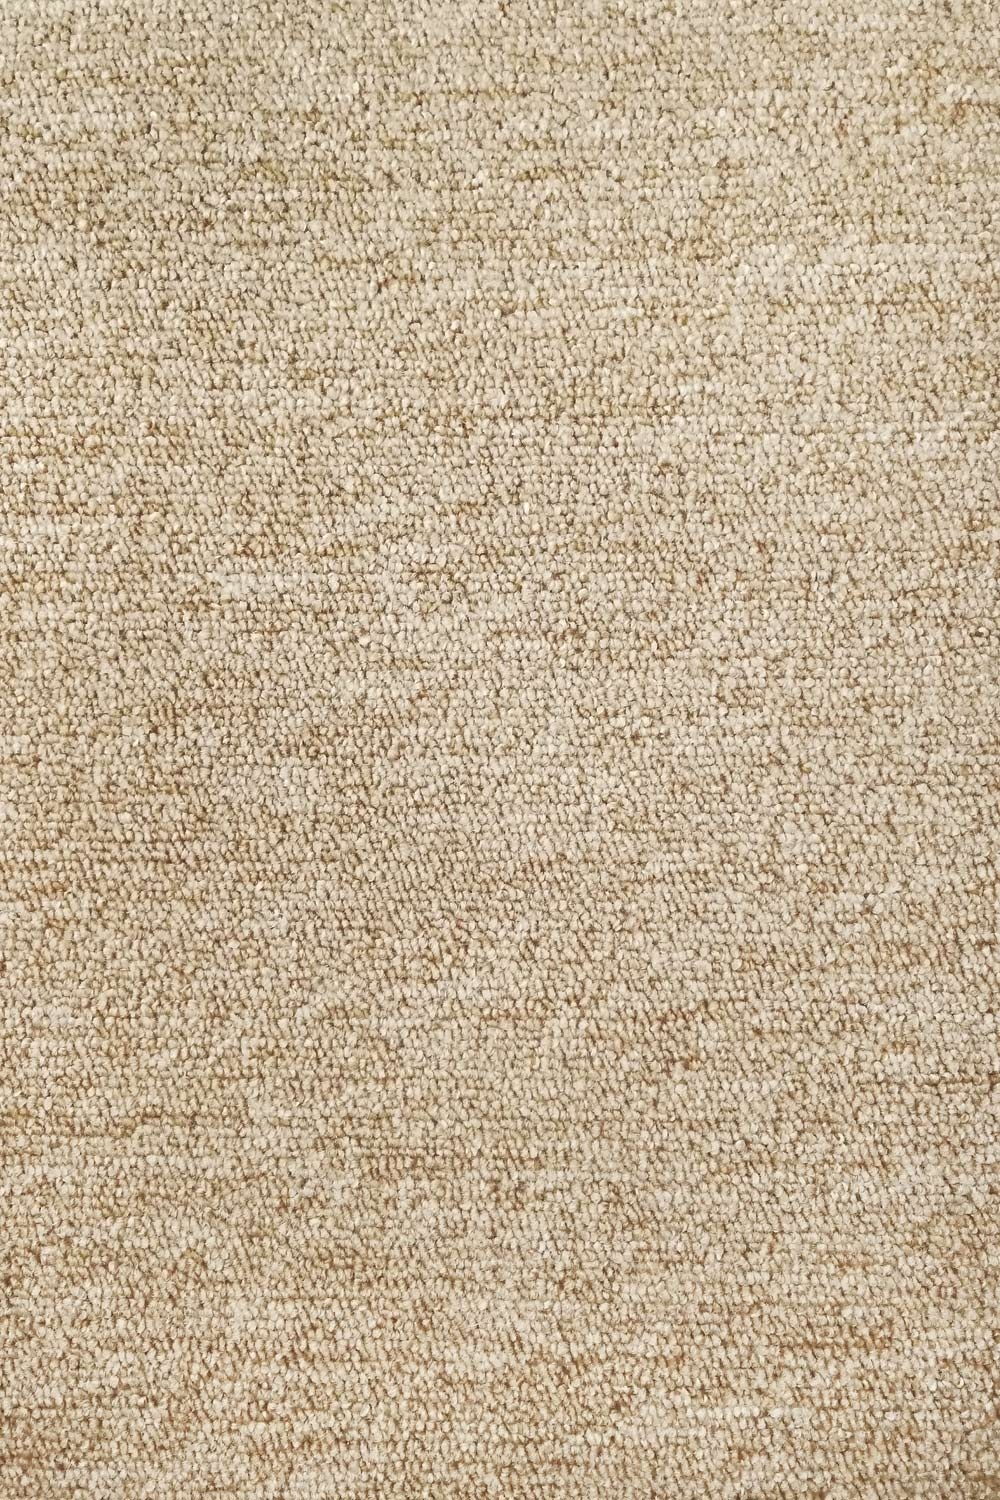 Metrážny koberec Rambo-Bet 71 - Zvyšok 511x400 cm (zvlnený)